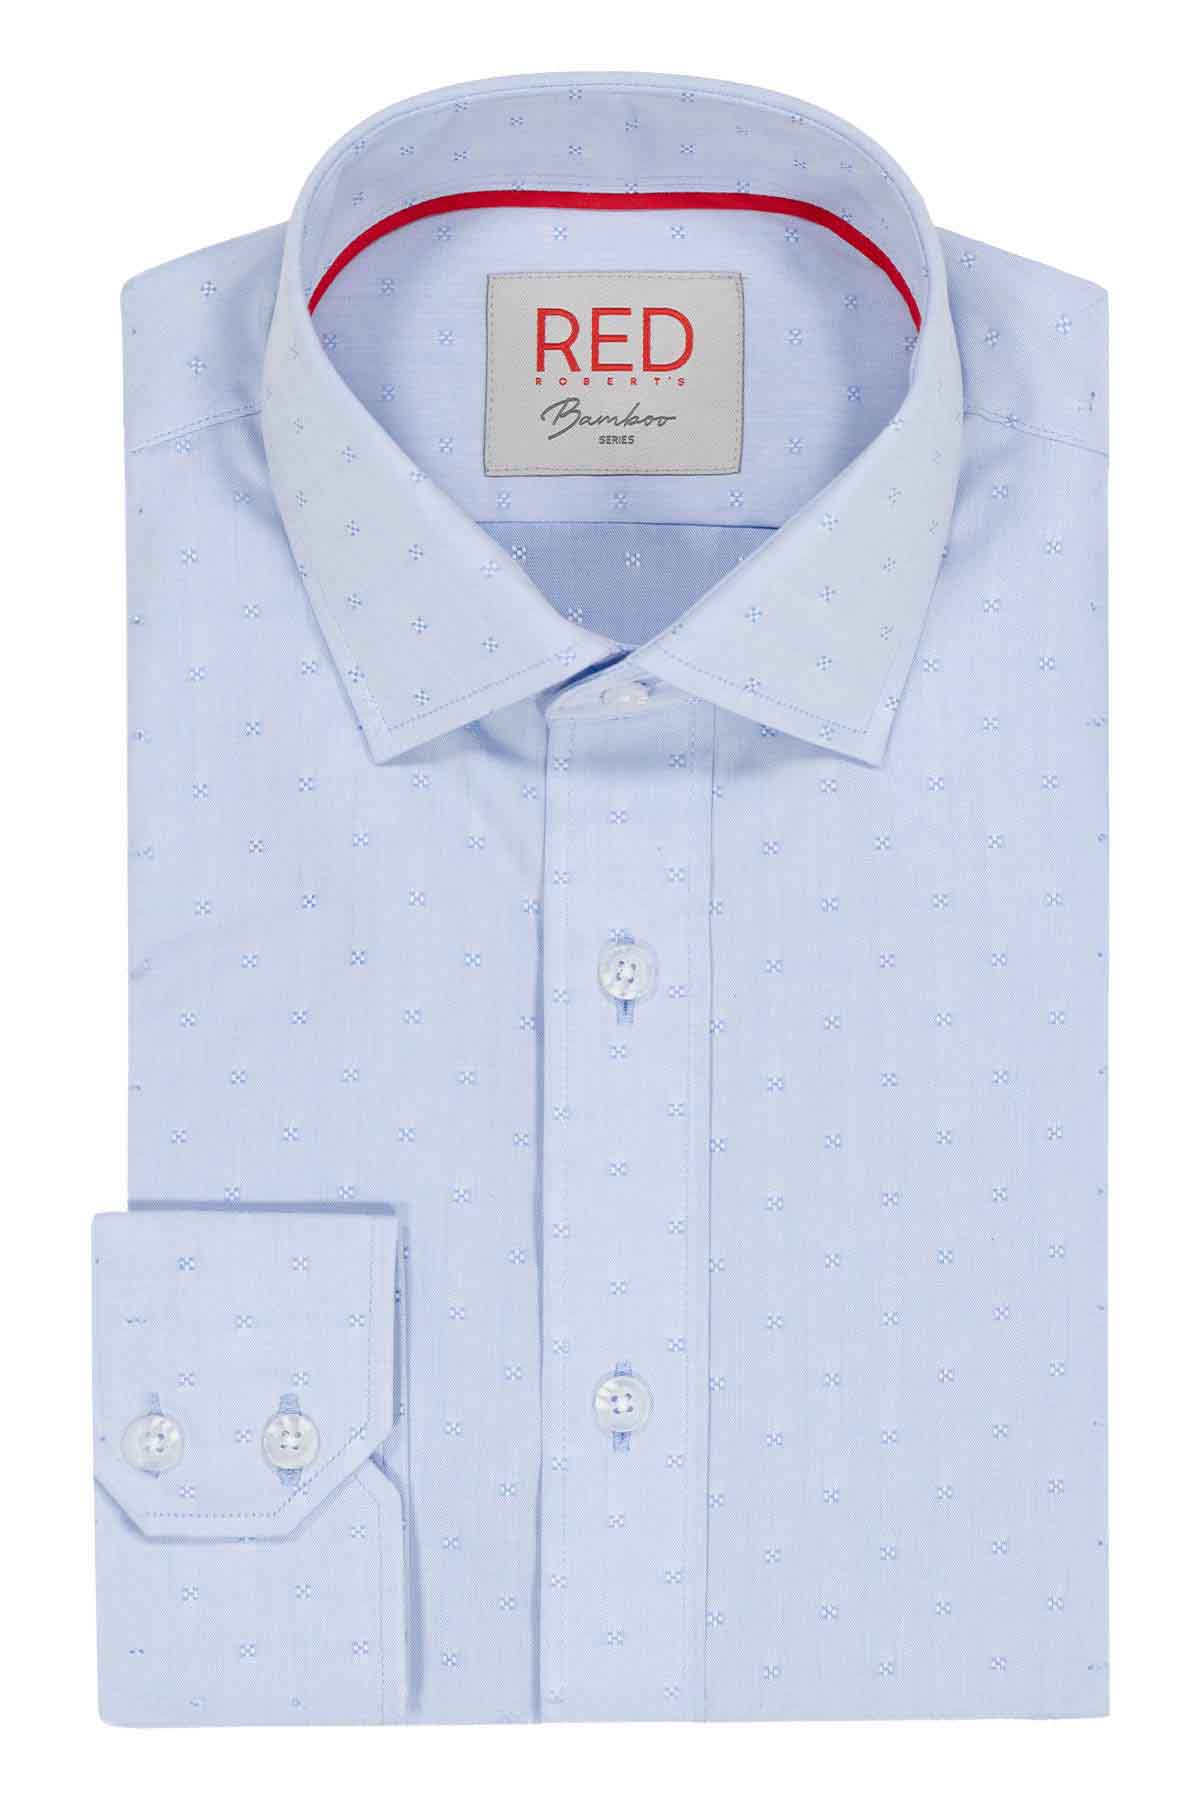 Camisa Vestir Roberts Red Azul Slim Fit